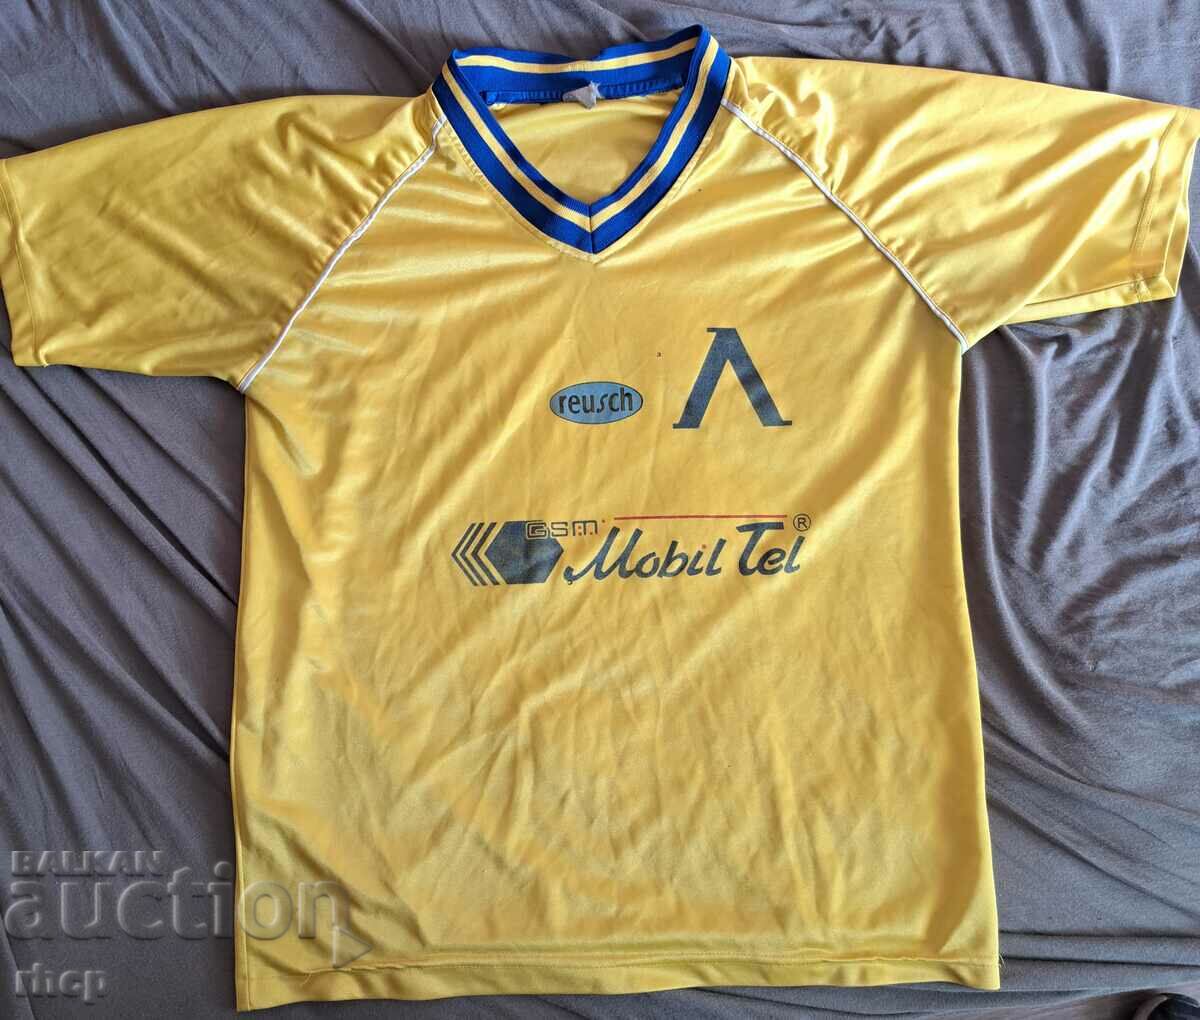 Λέφσκι κίτρινη φανέλα ποδοσφαίρου 1999-2000